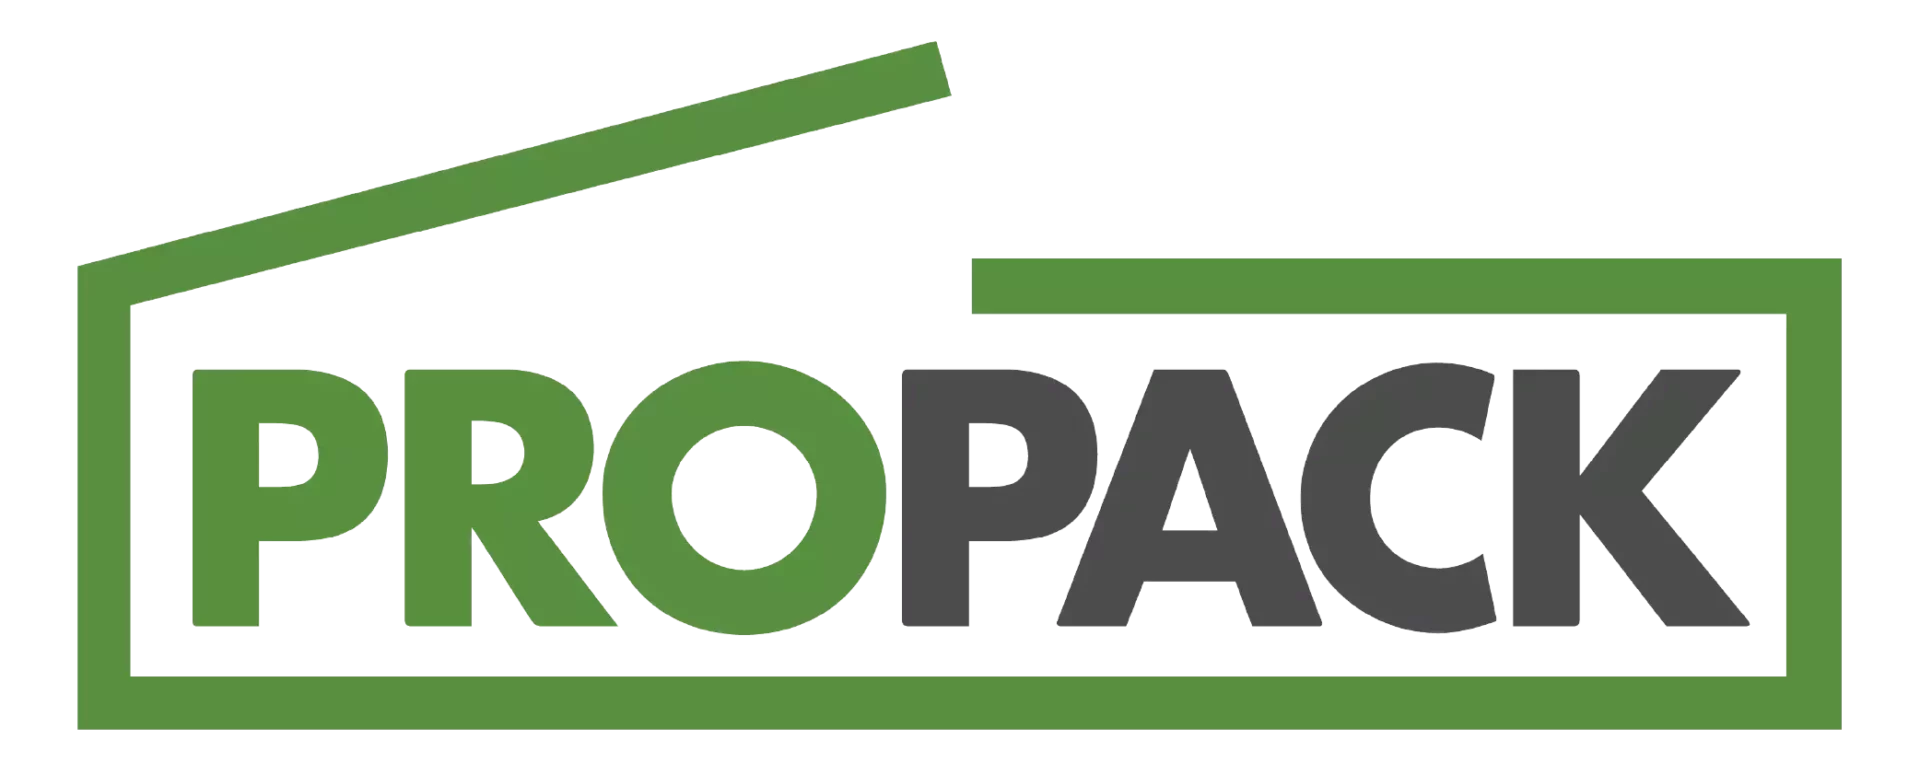 ProPack Logistics